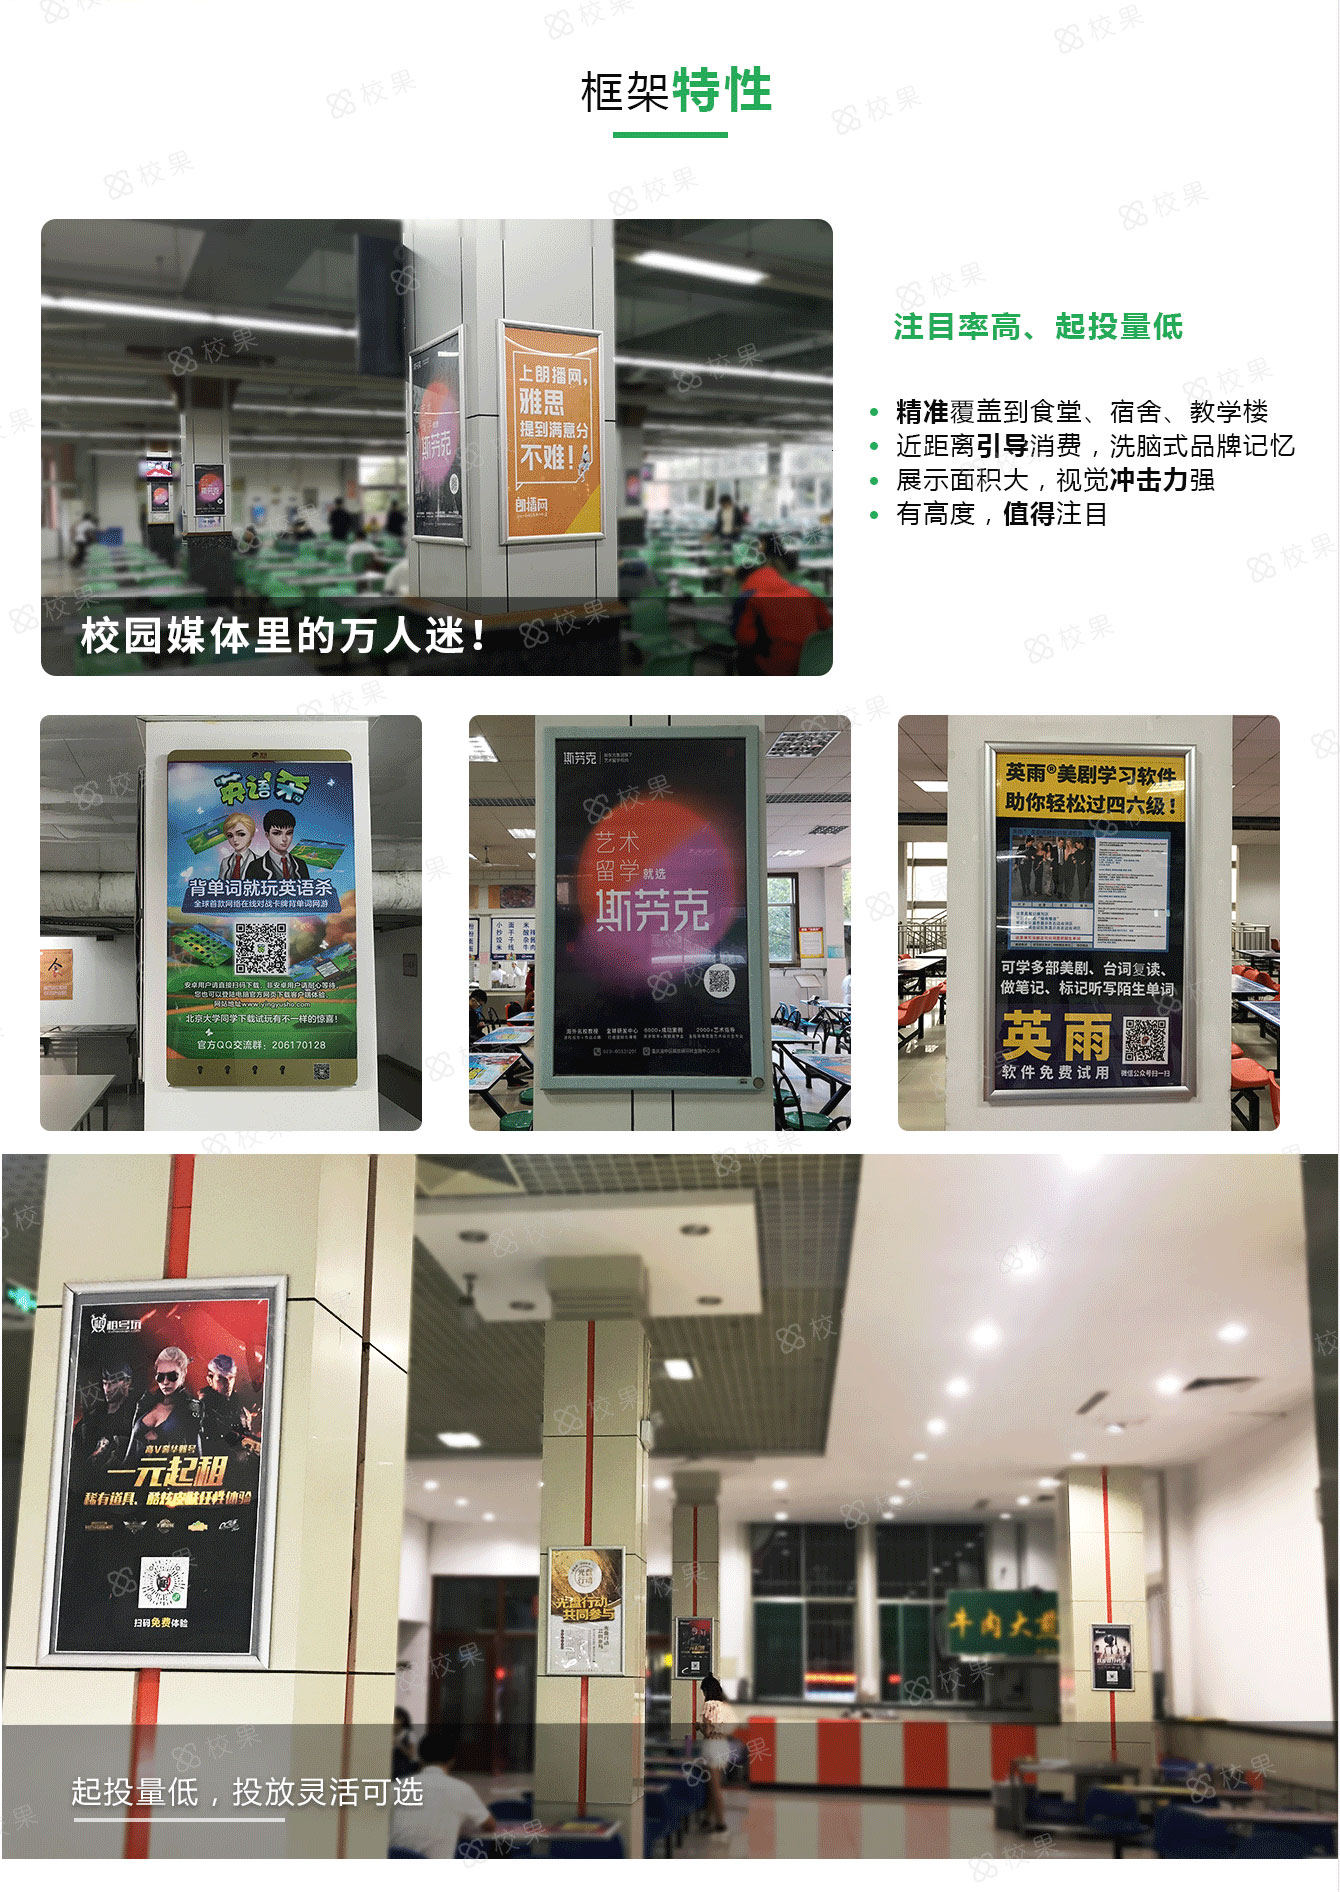 武汉高校框架广告特征